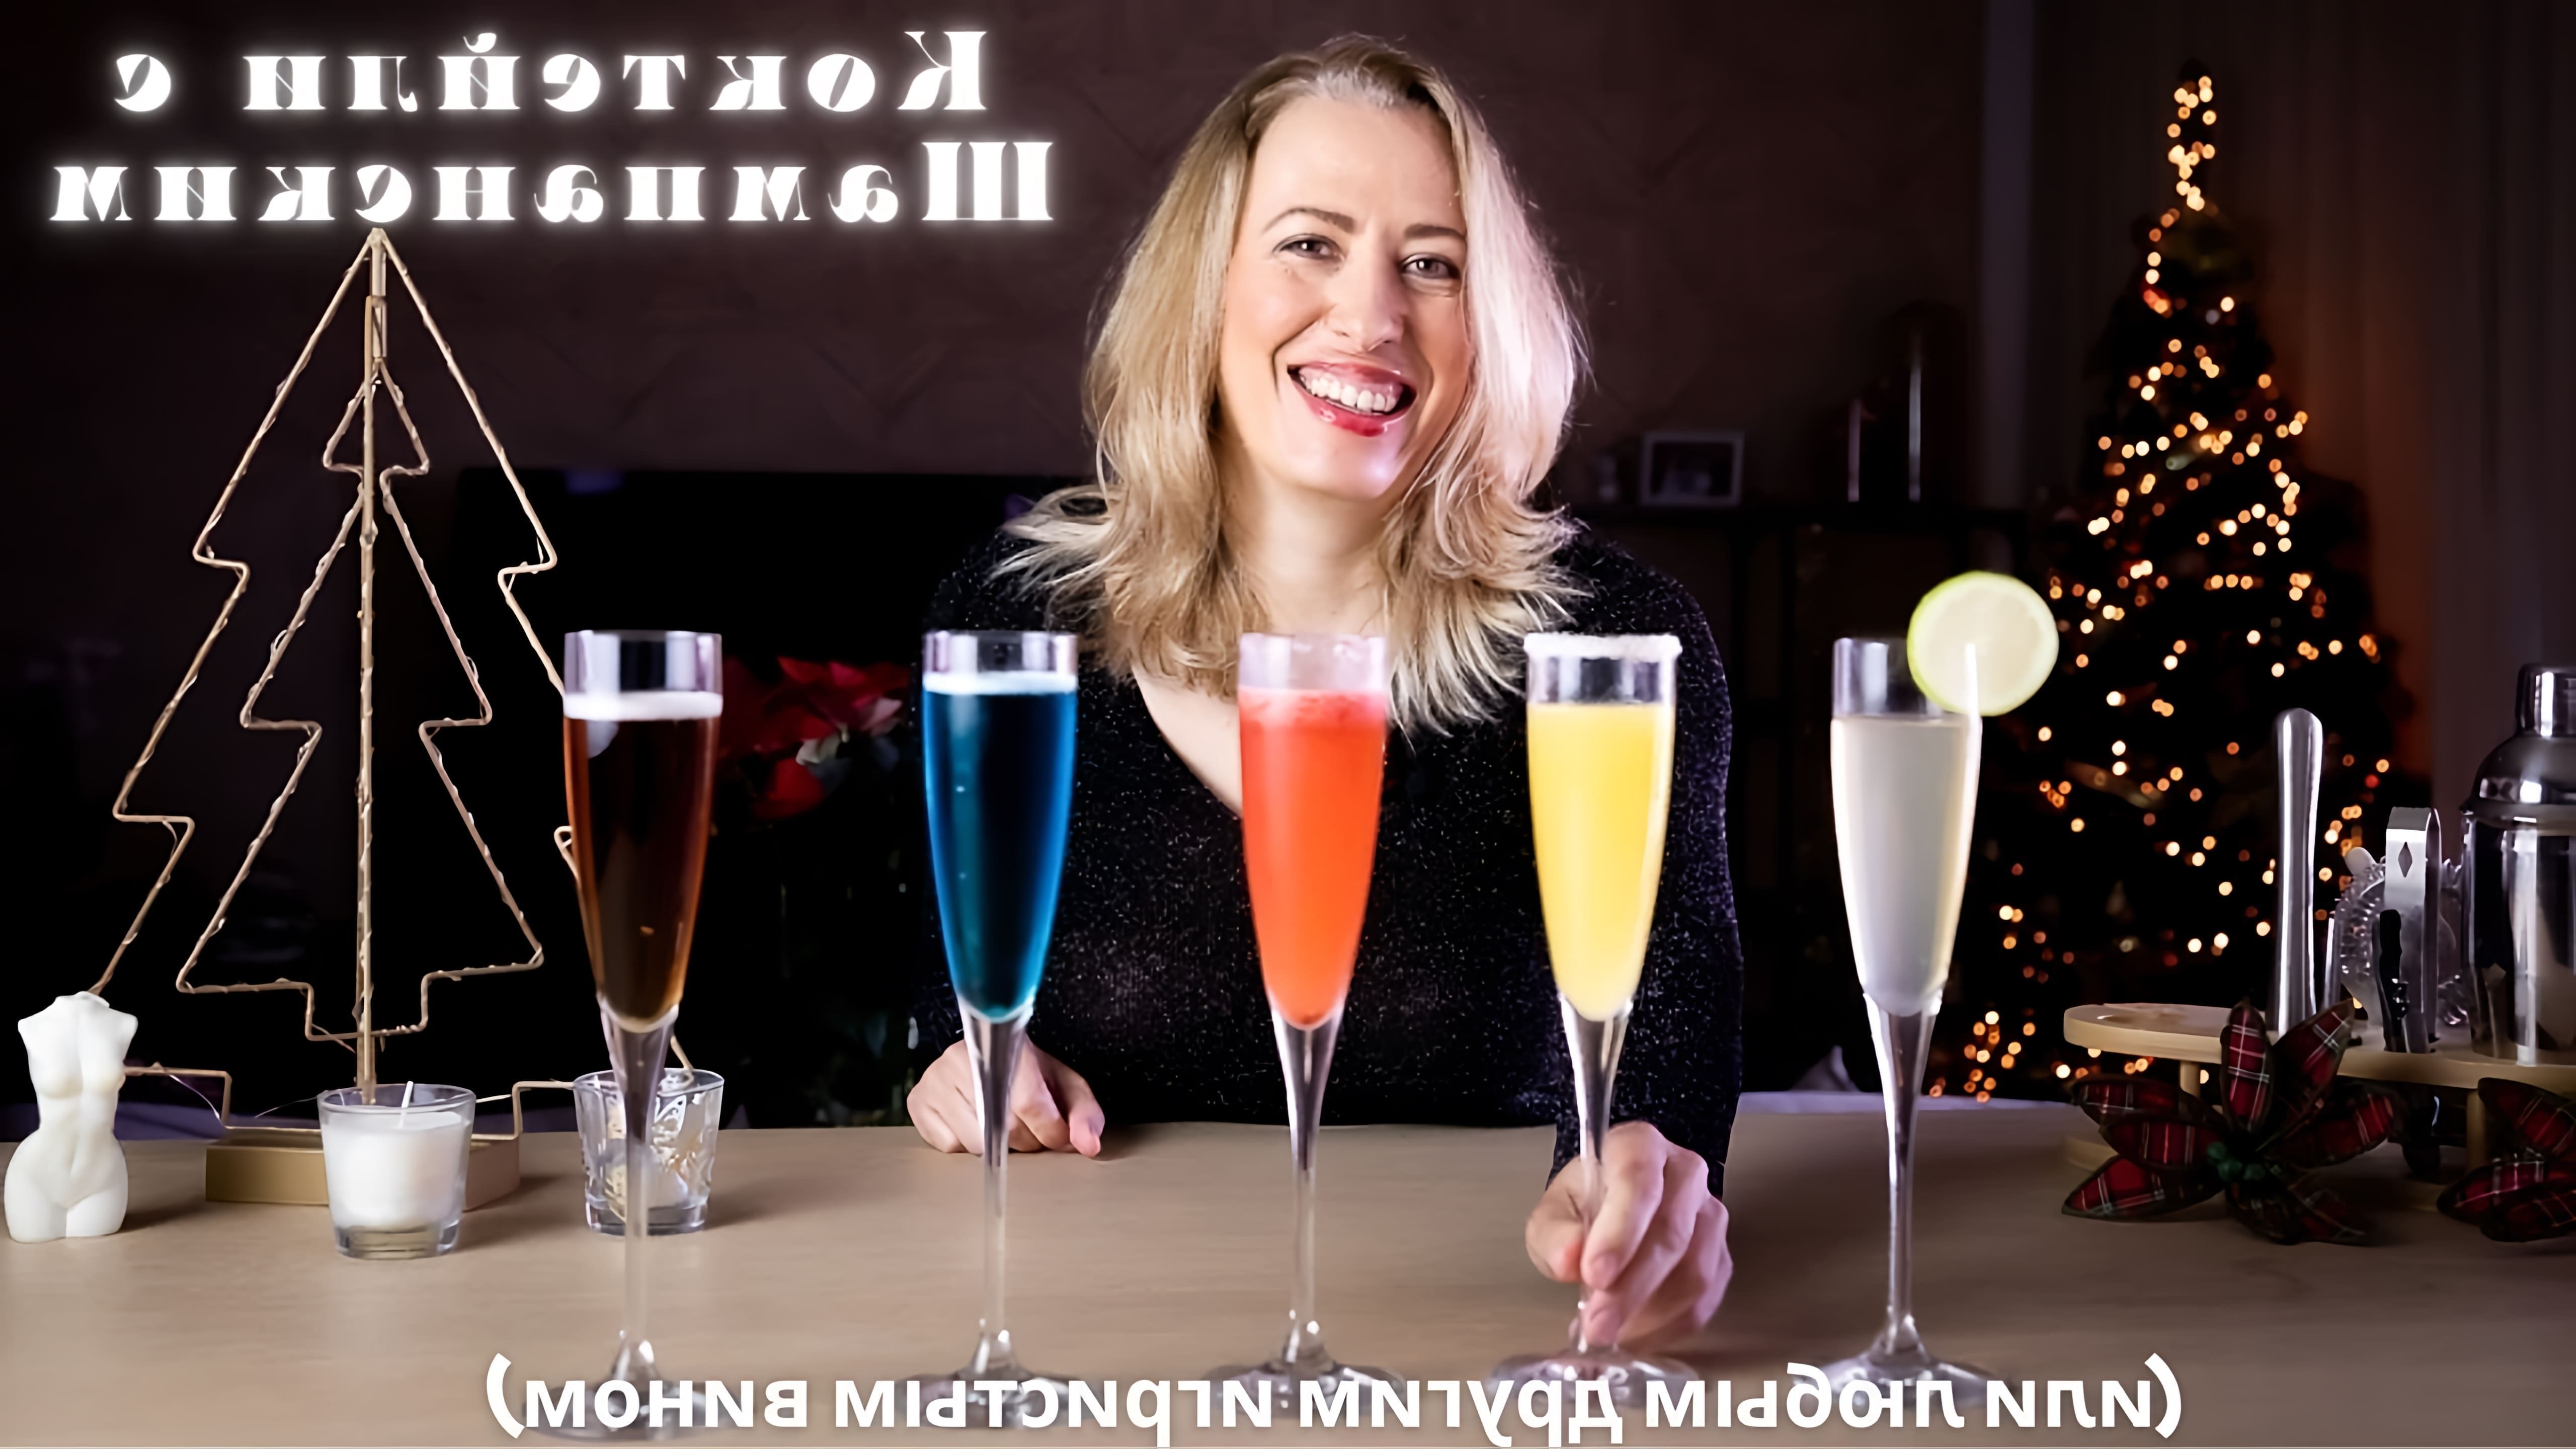 В этом видео Вера июля рассказывает о приготовлении коктейлей с шампанским или другими игристыми винами